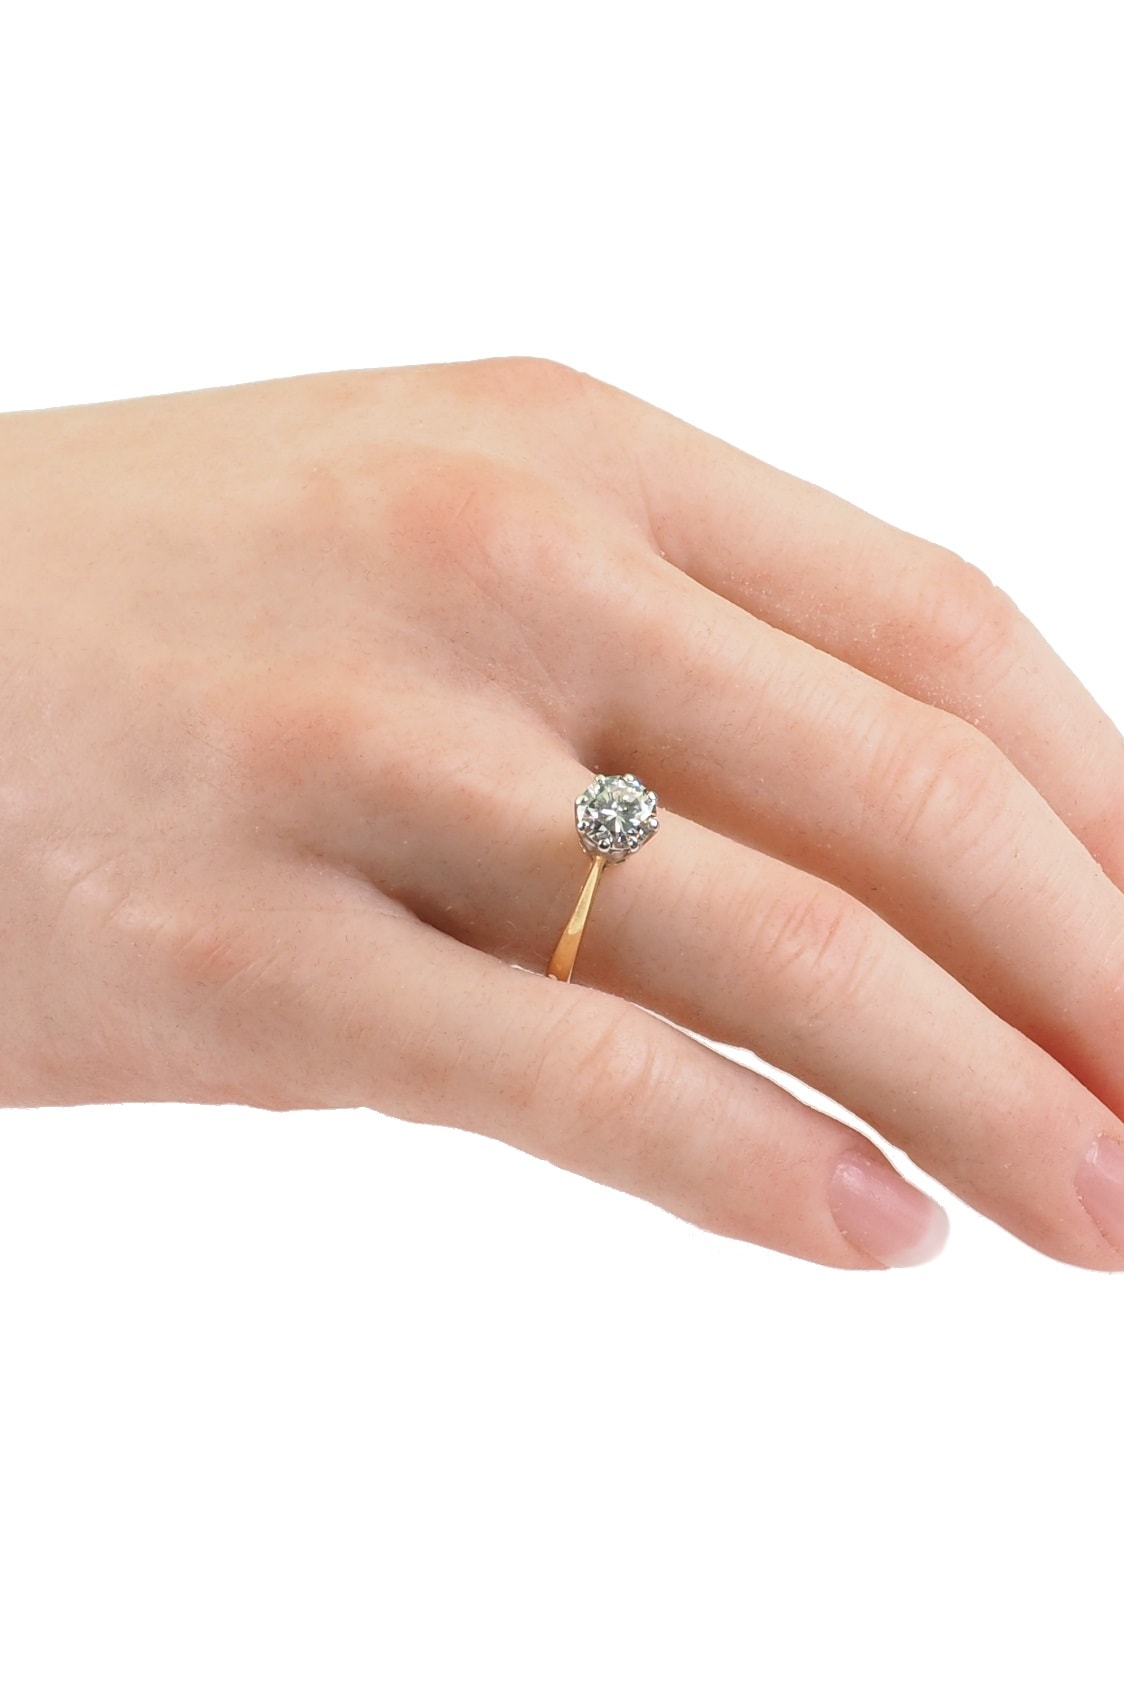 2571-Diamantring-Verlobung